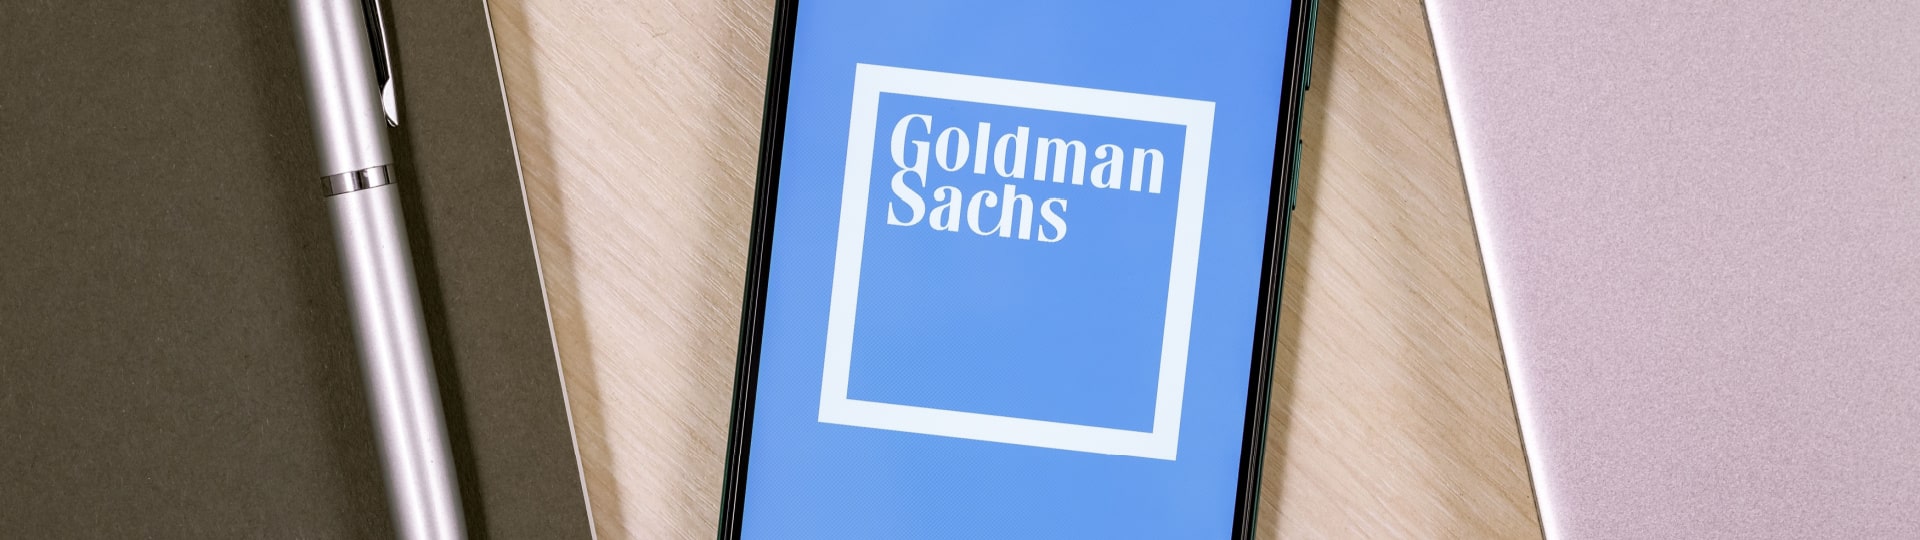 Goldman Sachs má o 62 procent nižší zisk